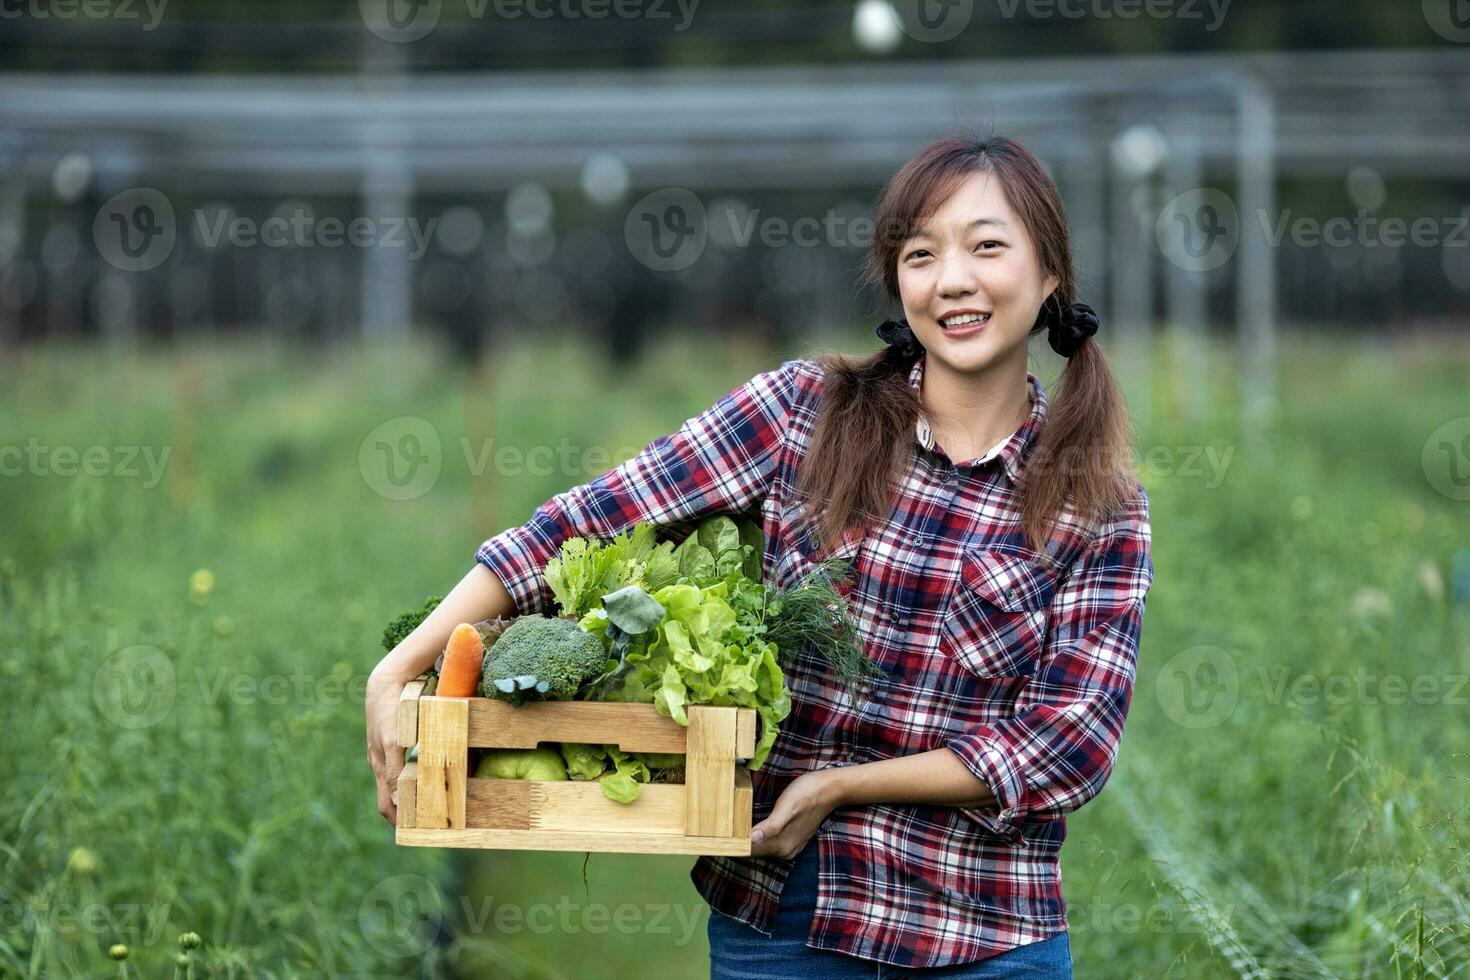 asiatisk kvinna jordbrukare är bärande trä- bricka full av nyligen plocka organiska ämnen grönsaker i henne trädgård för skörda säsong och friska diet mat begrepp foto